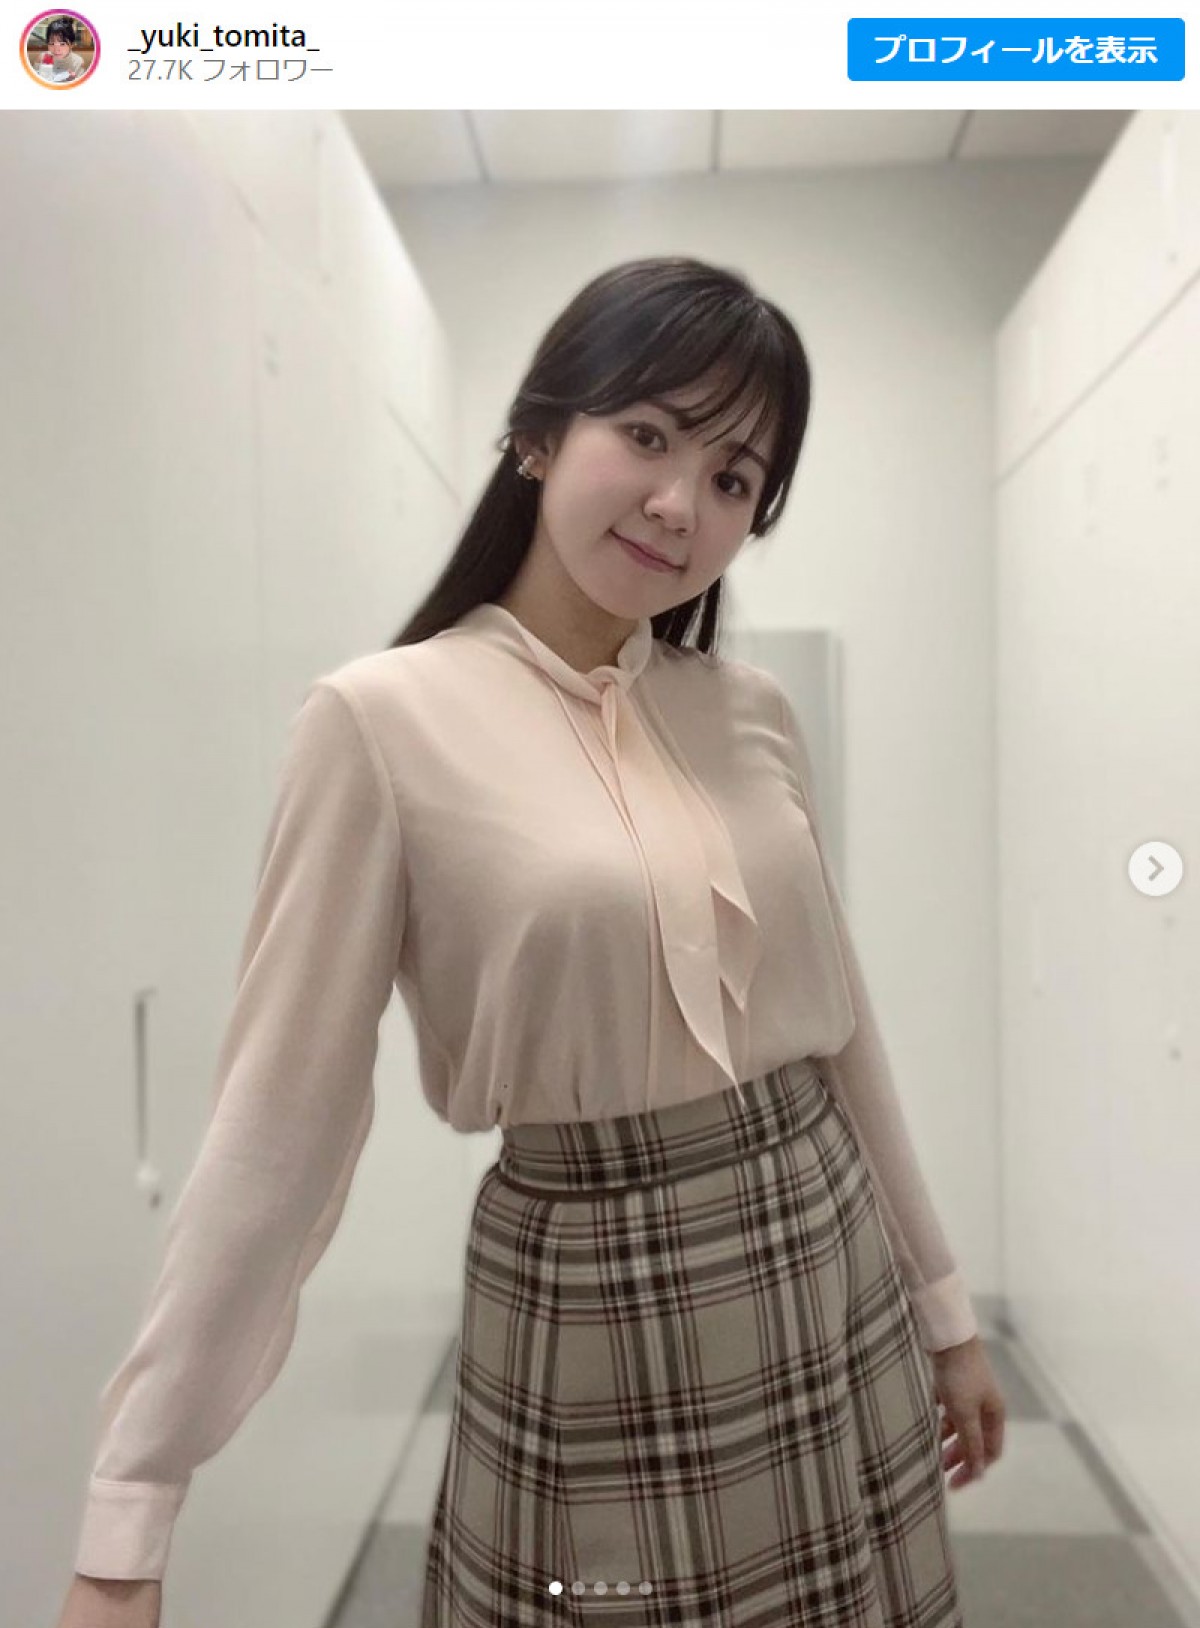 テレビ東京・冨田有紀アナ、抜群スタイルの衣装姿に「美女」「清楚で美人で綺麗」